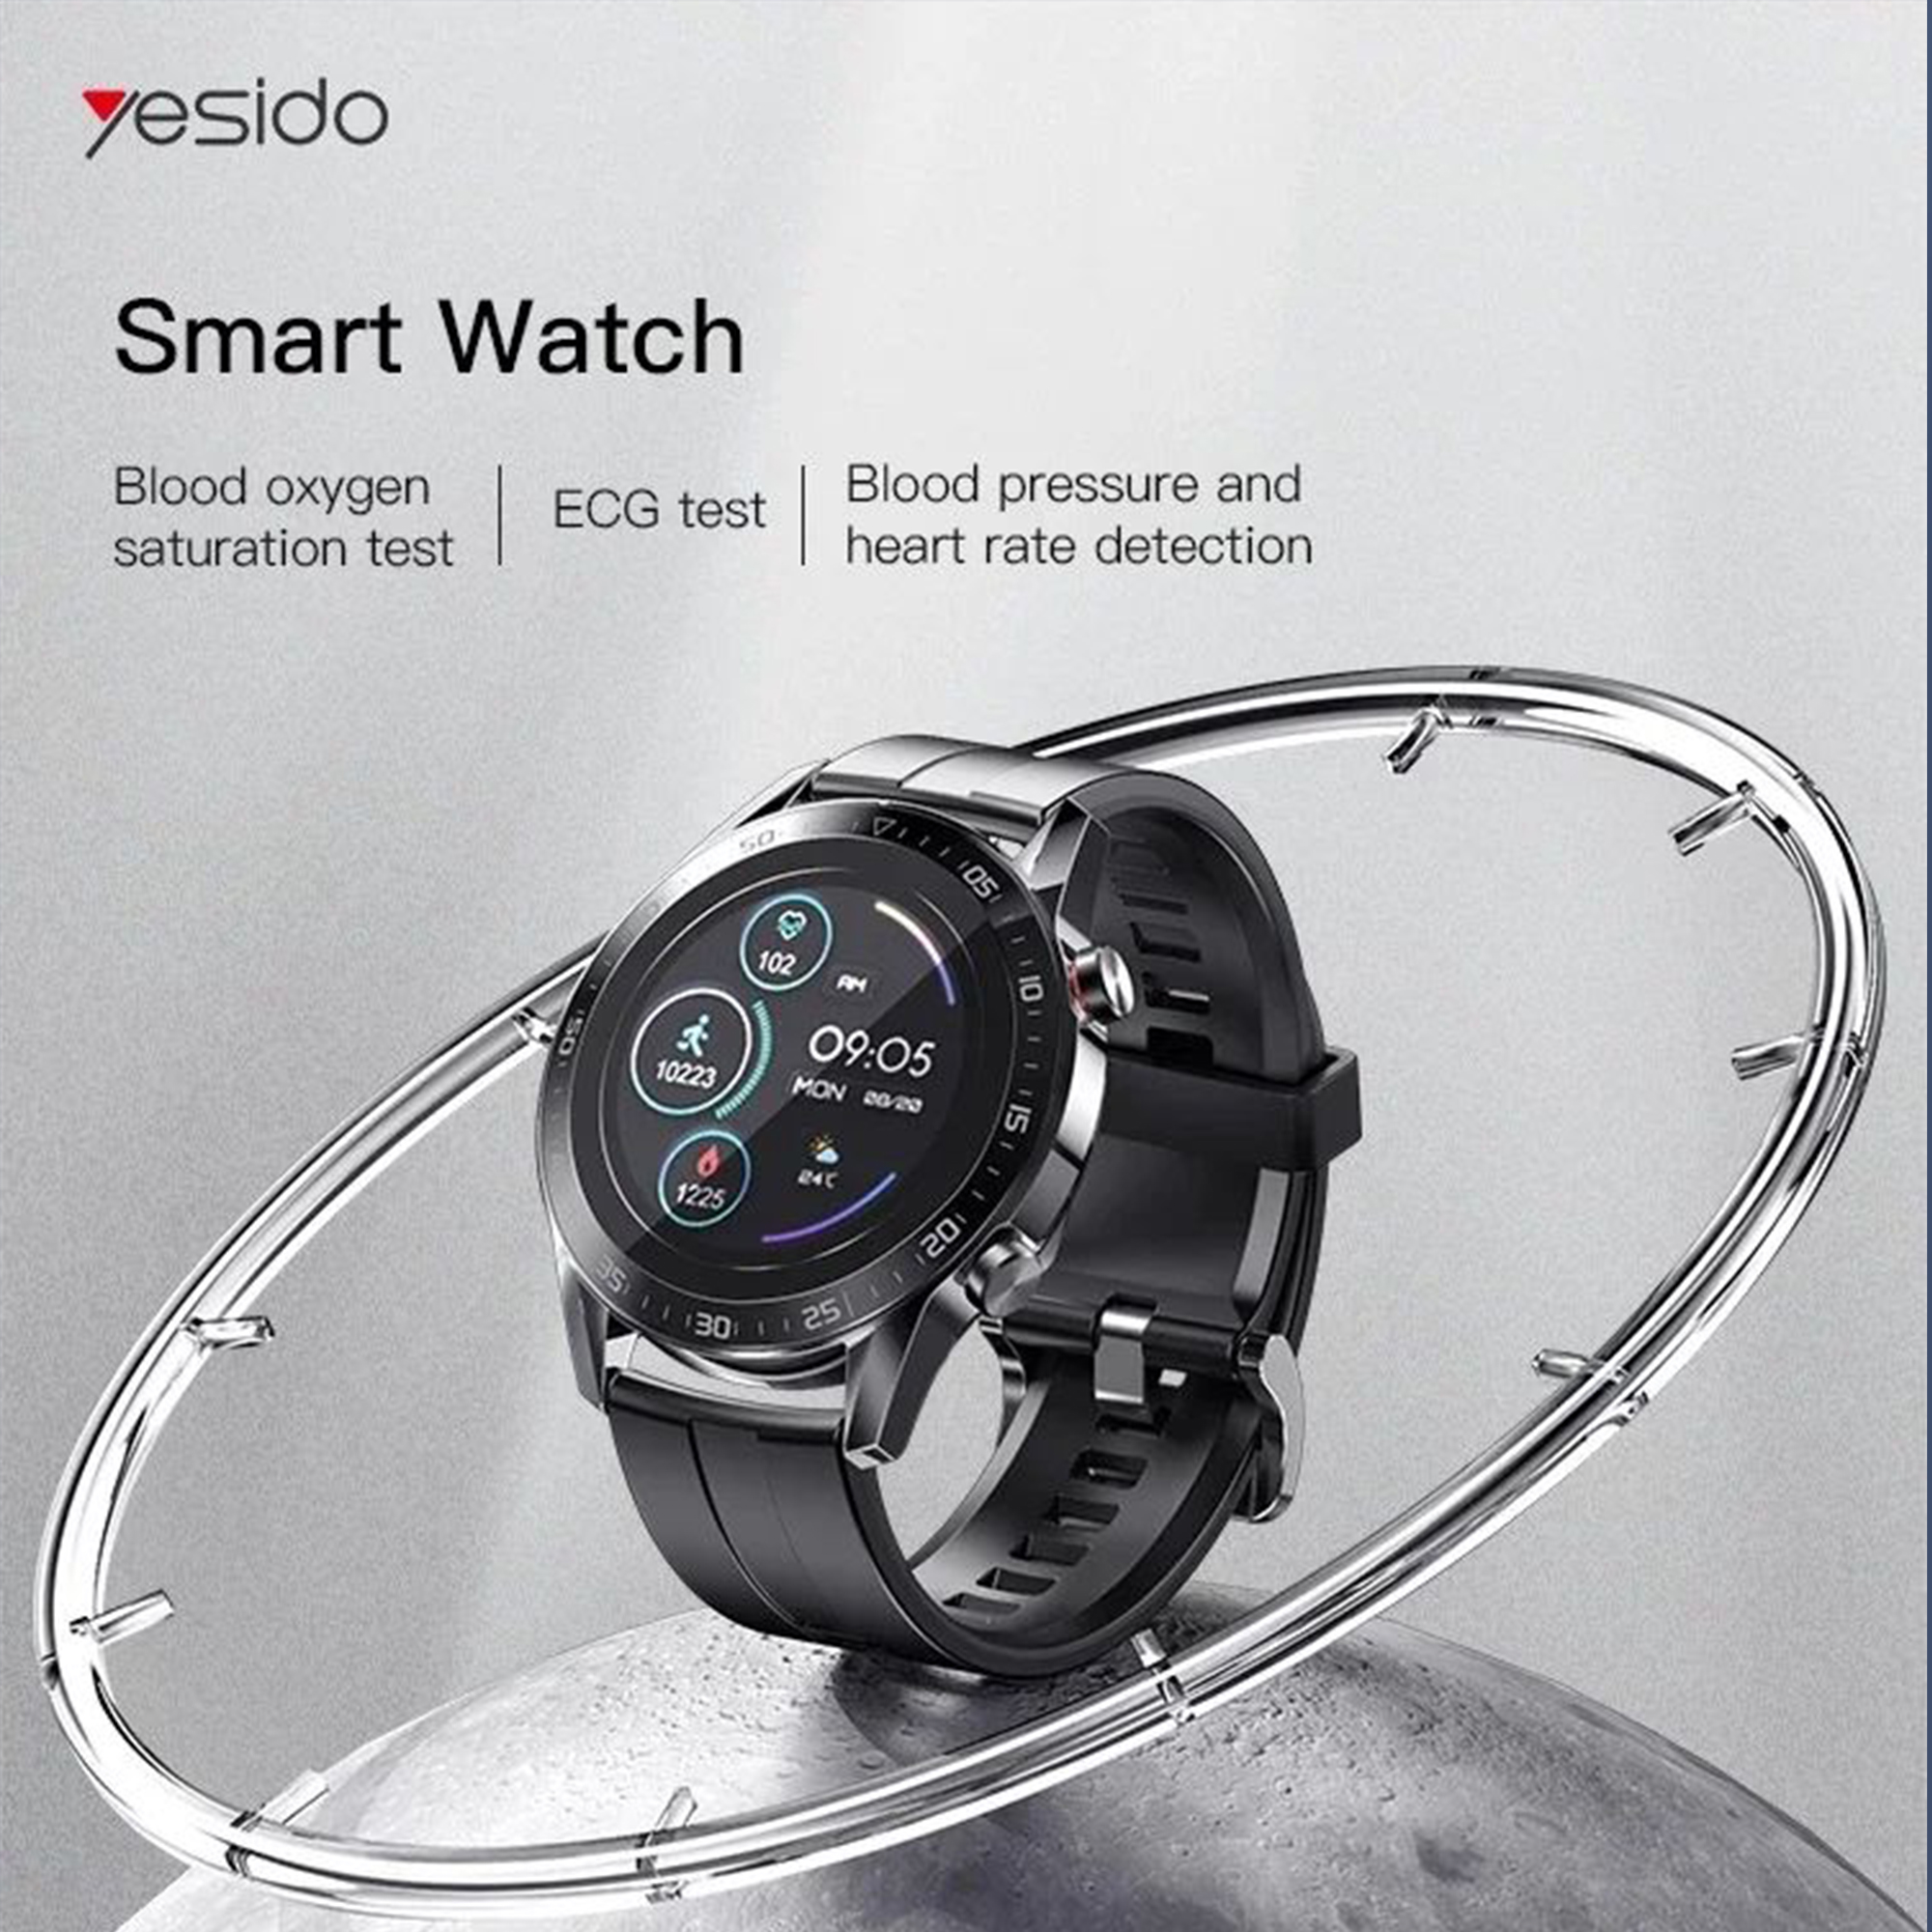 ساعت هوشمند یسیدو مدل IO10